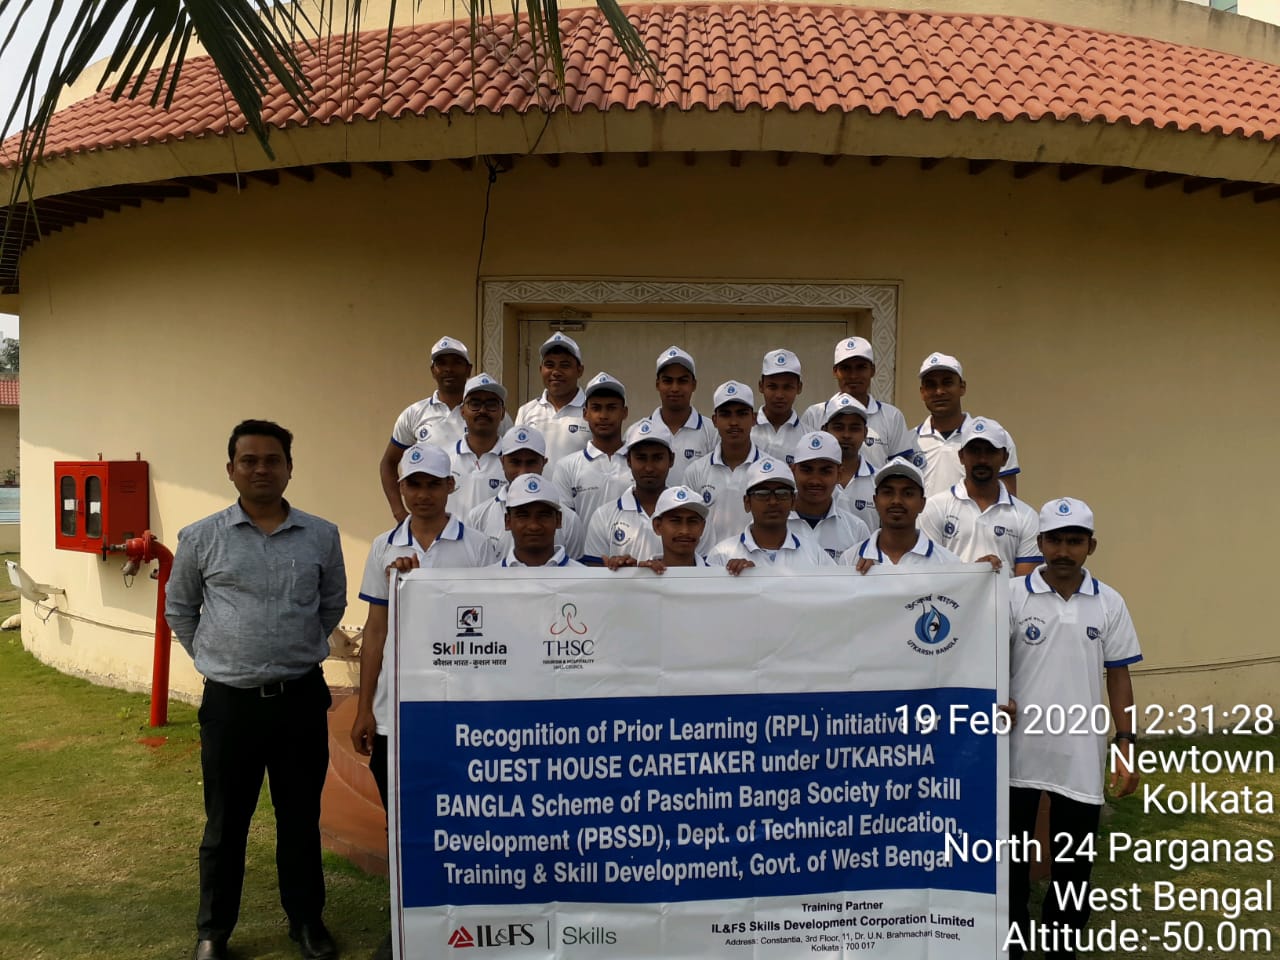 RPL training under Utkarsh Bangla for Guest House Caretaker